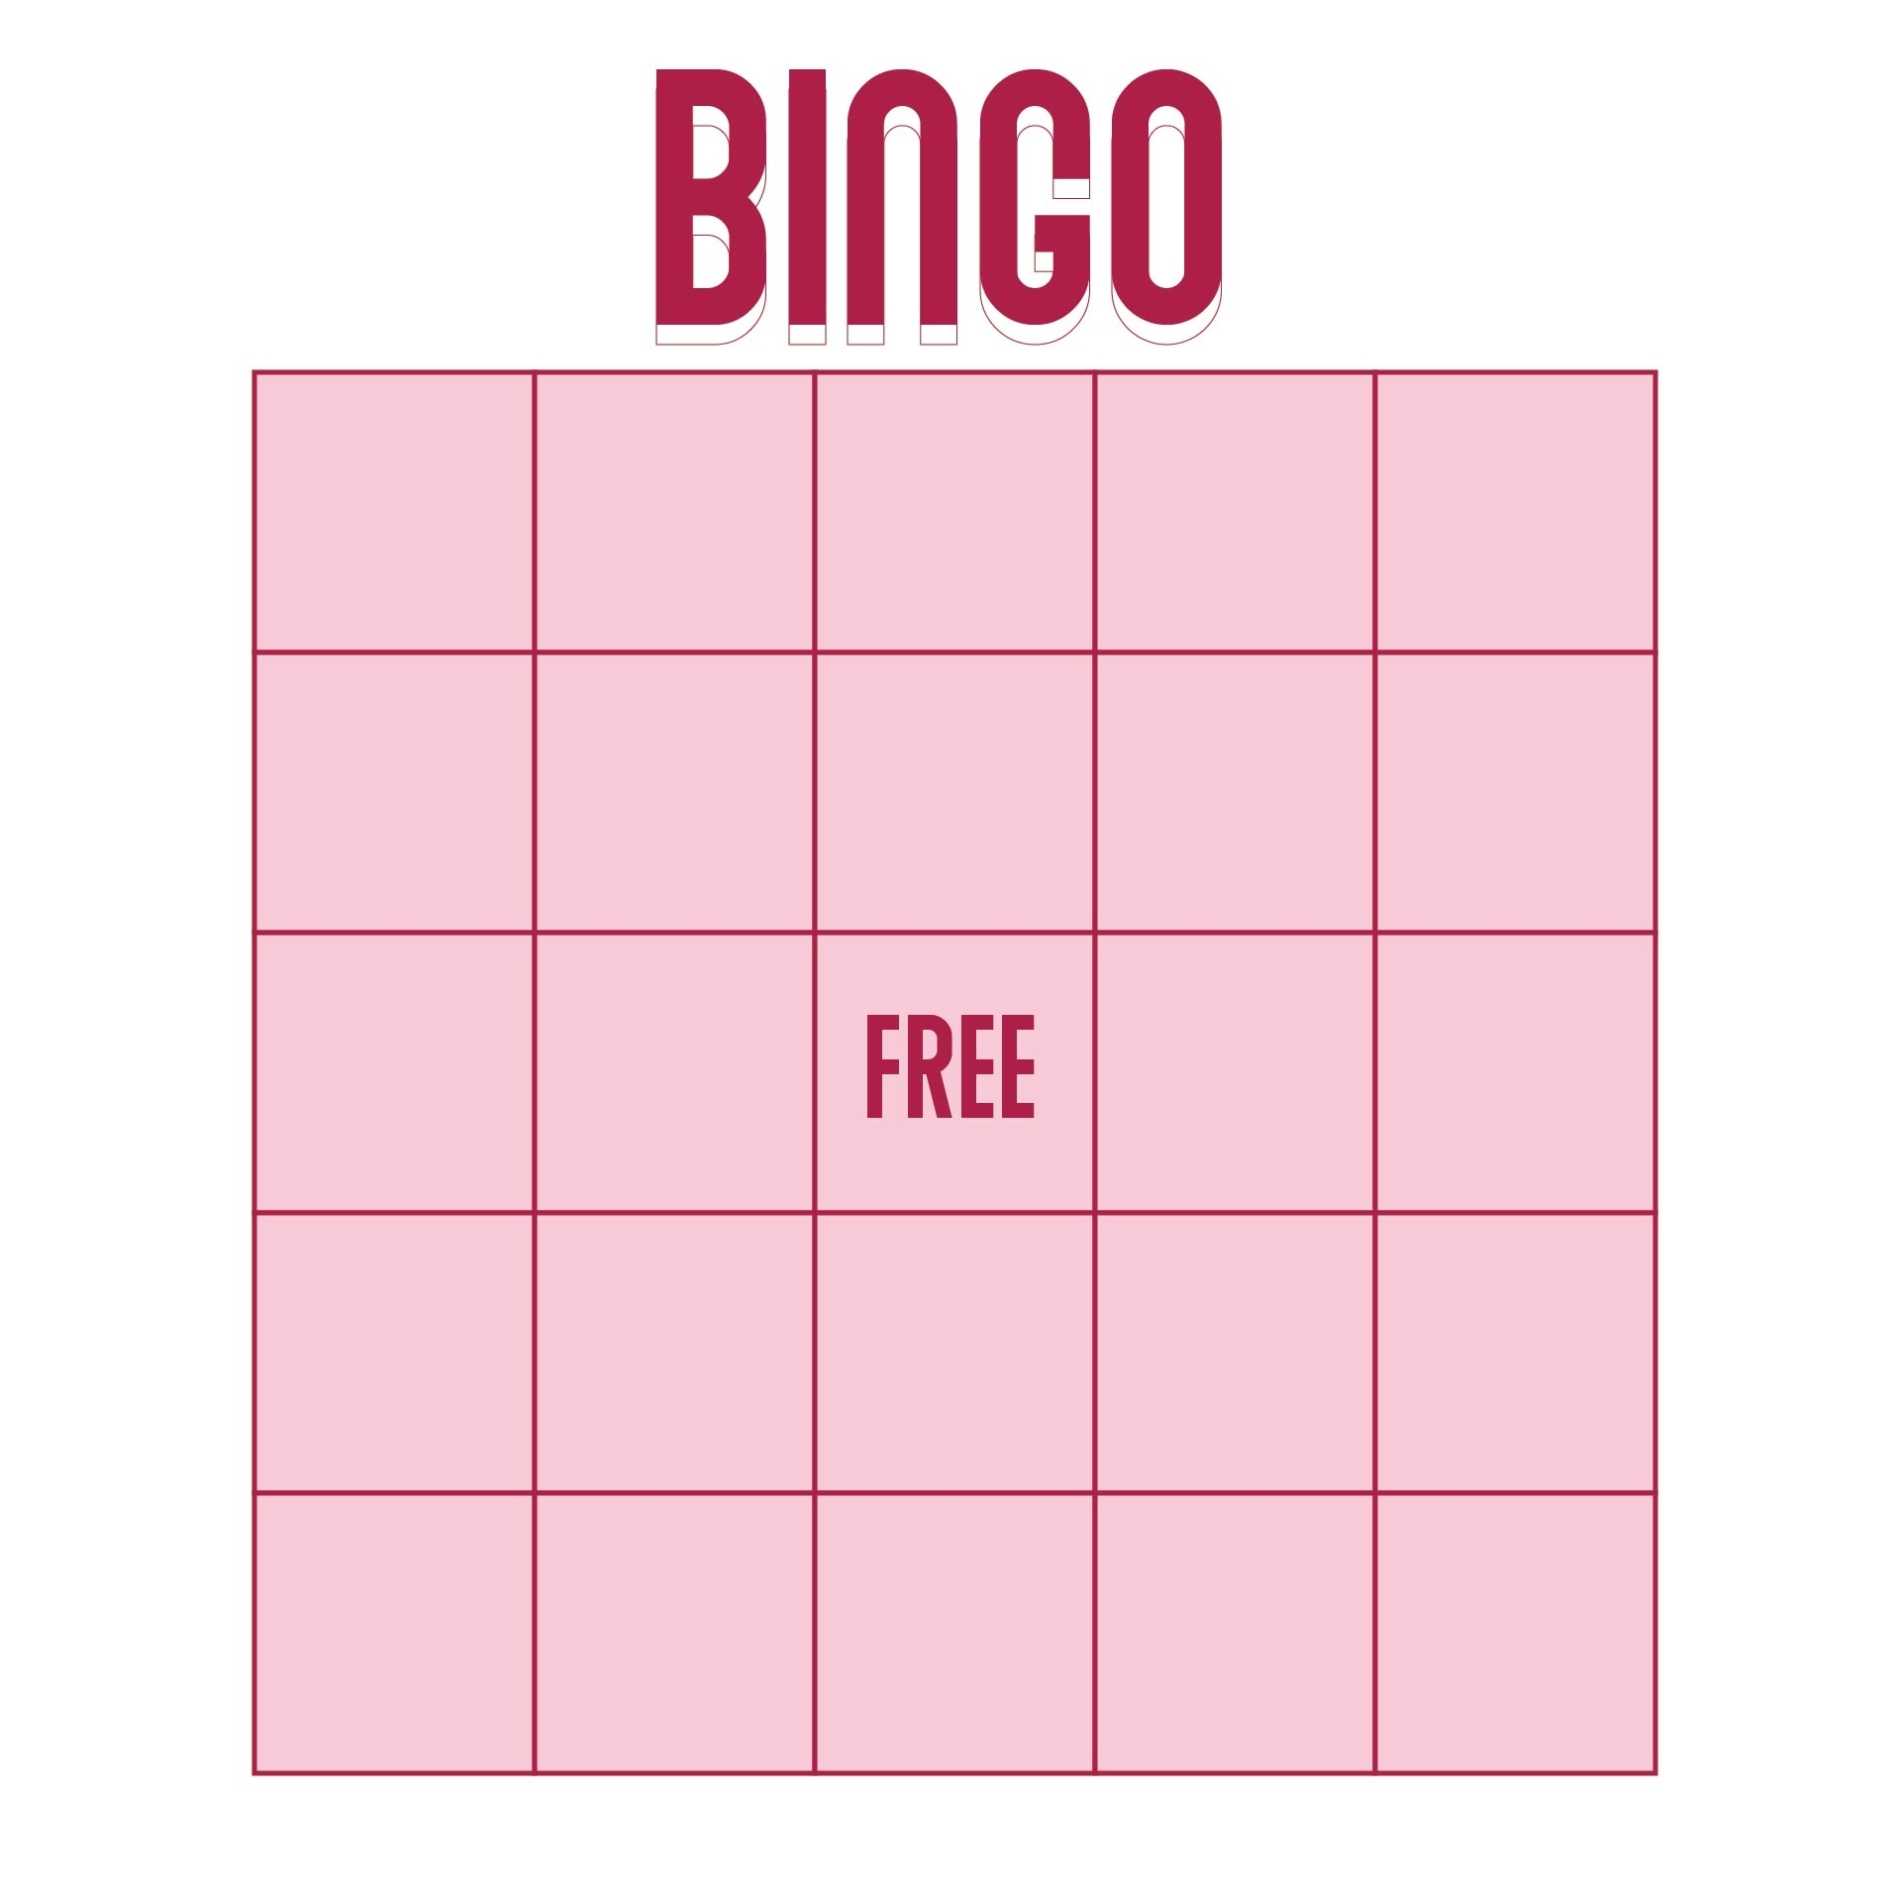 11-best-excel-bingo-card-printable-template-printablee-throughout